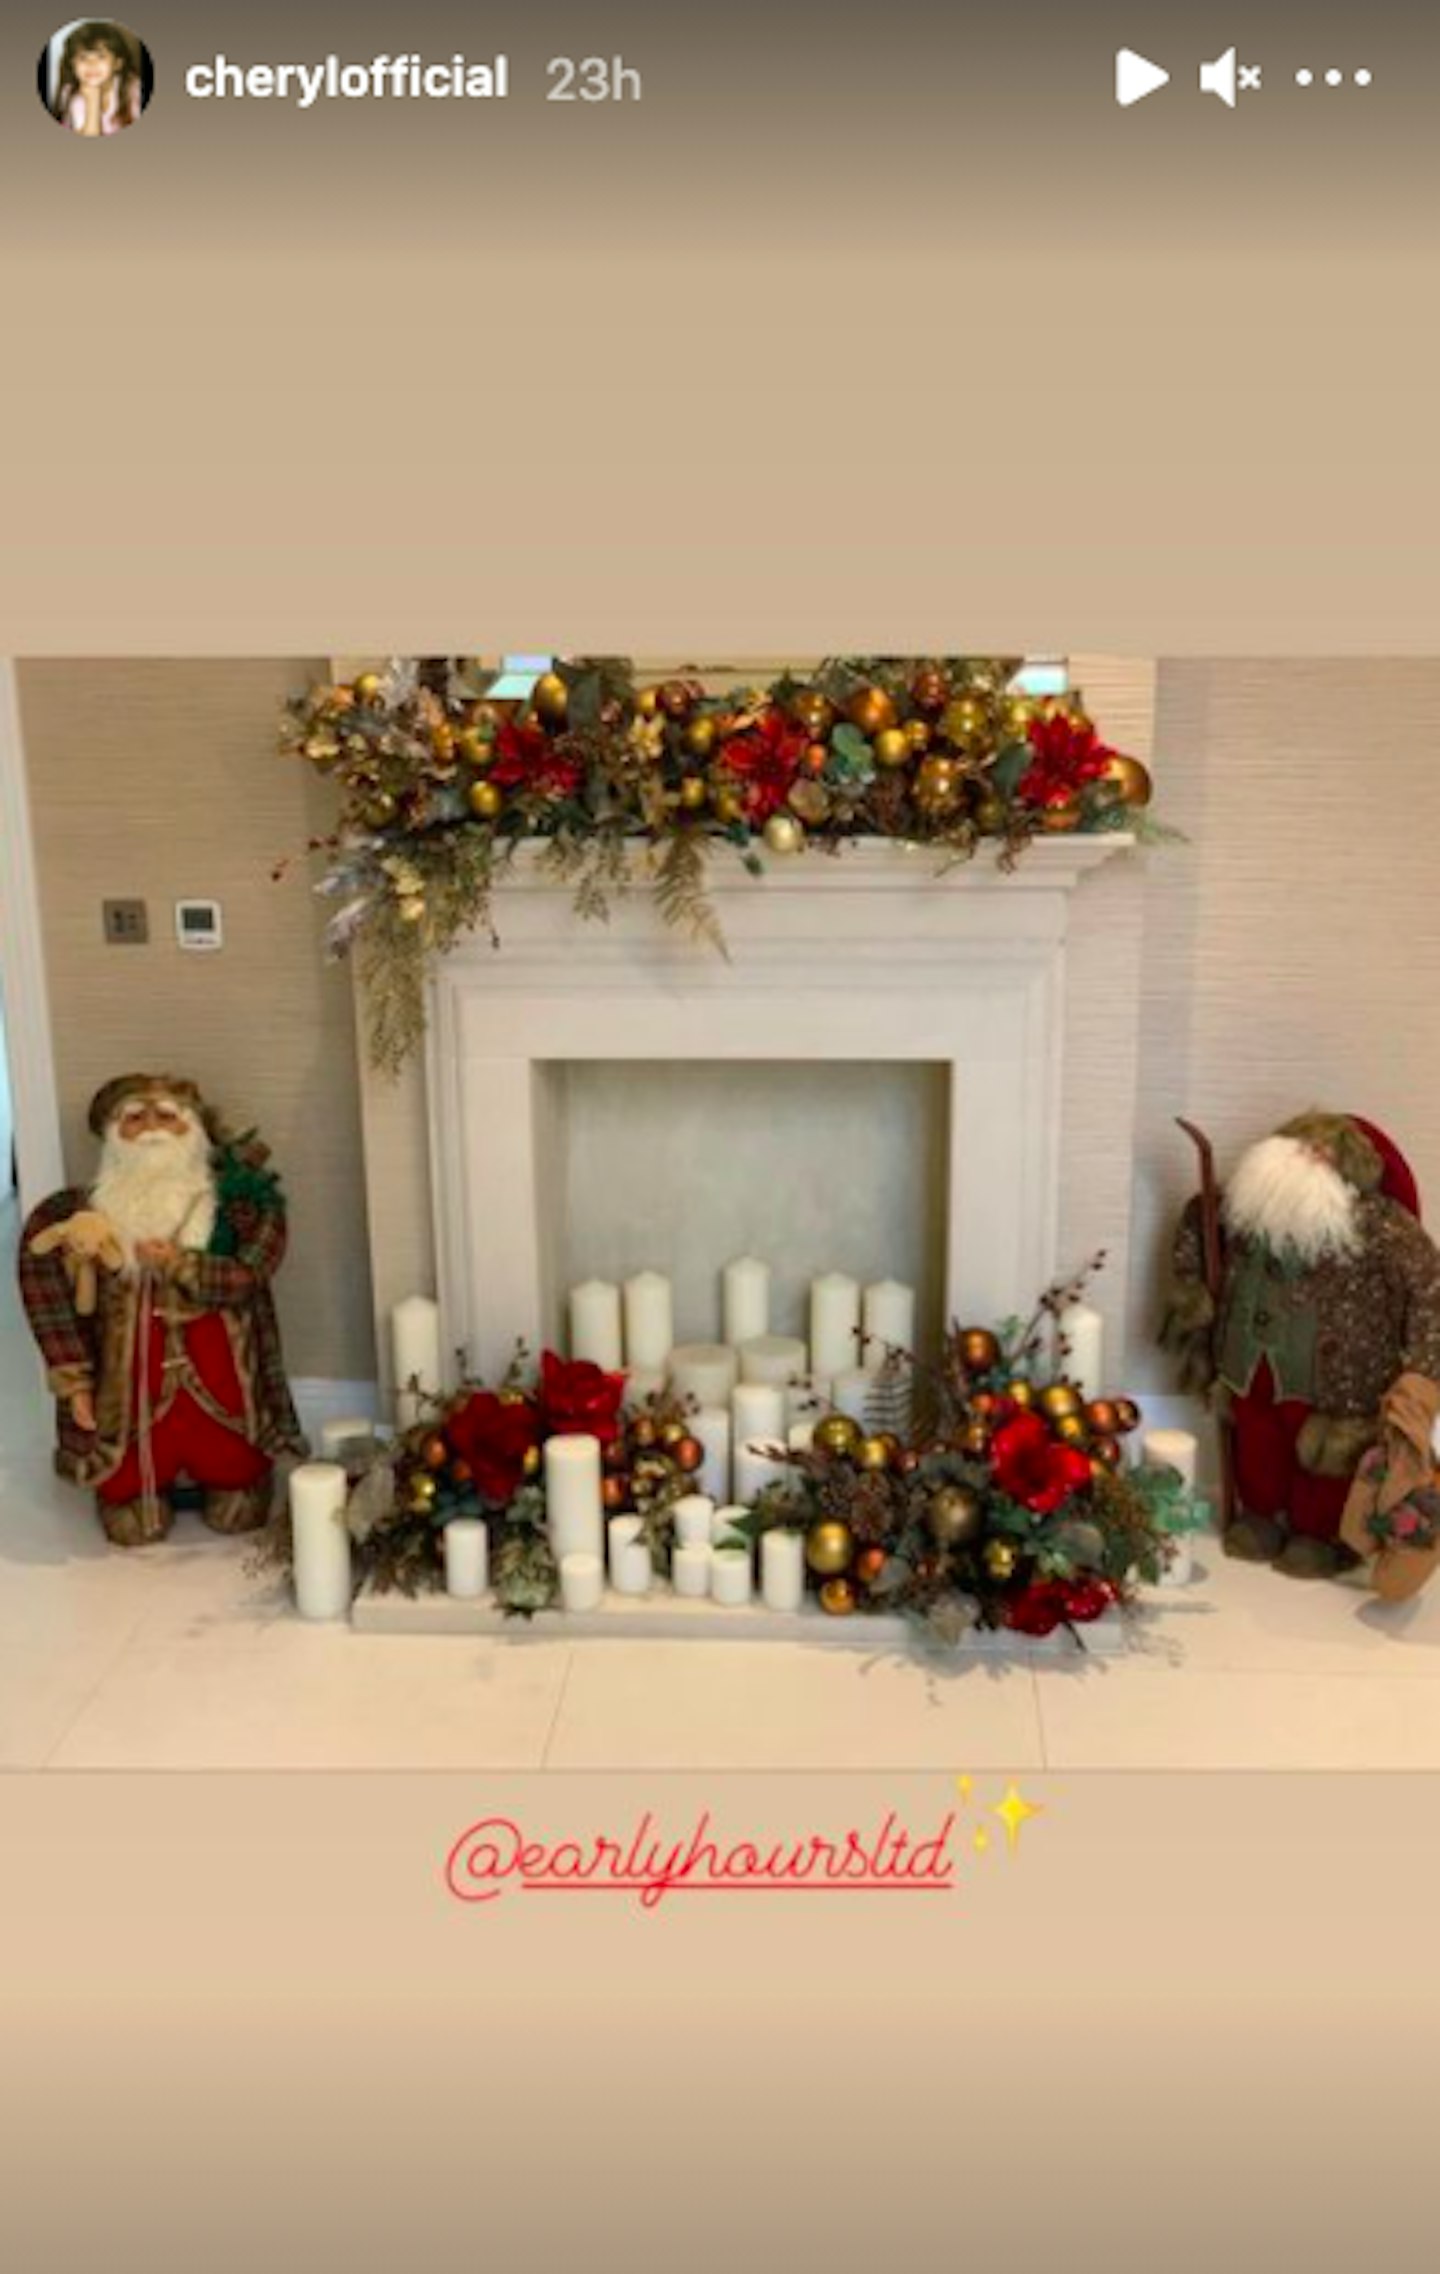 Cheryl's Christmas set up